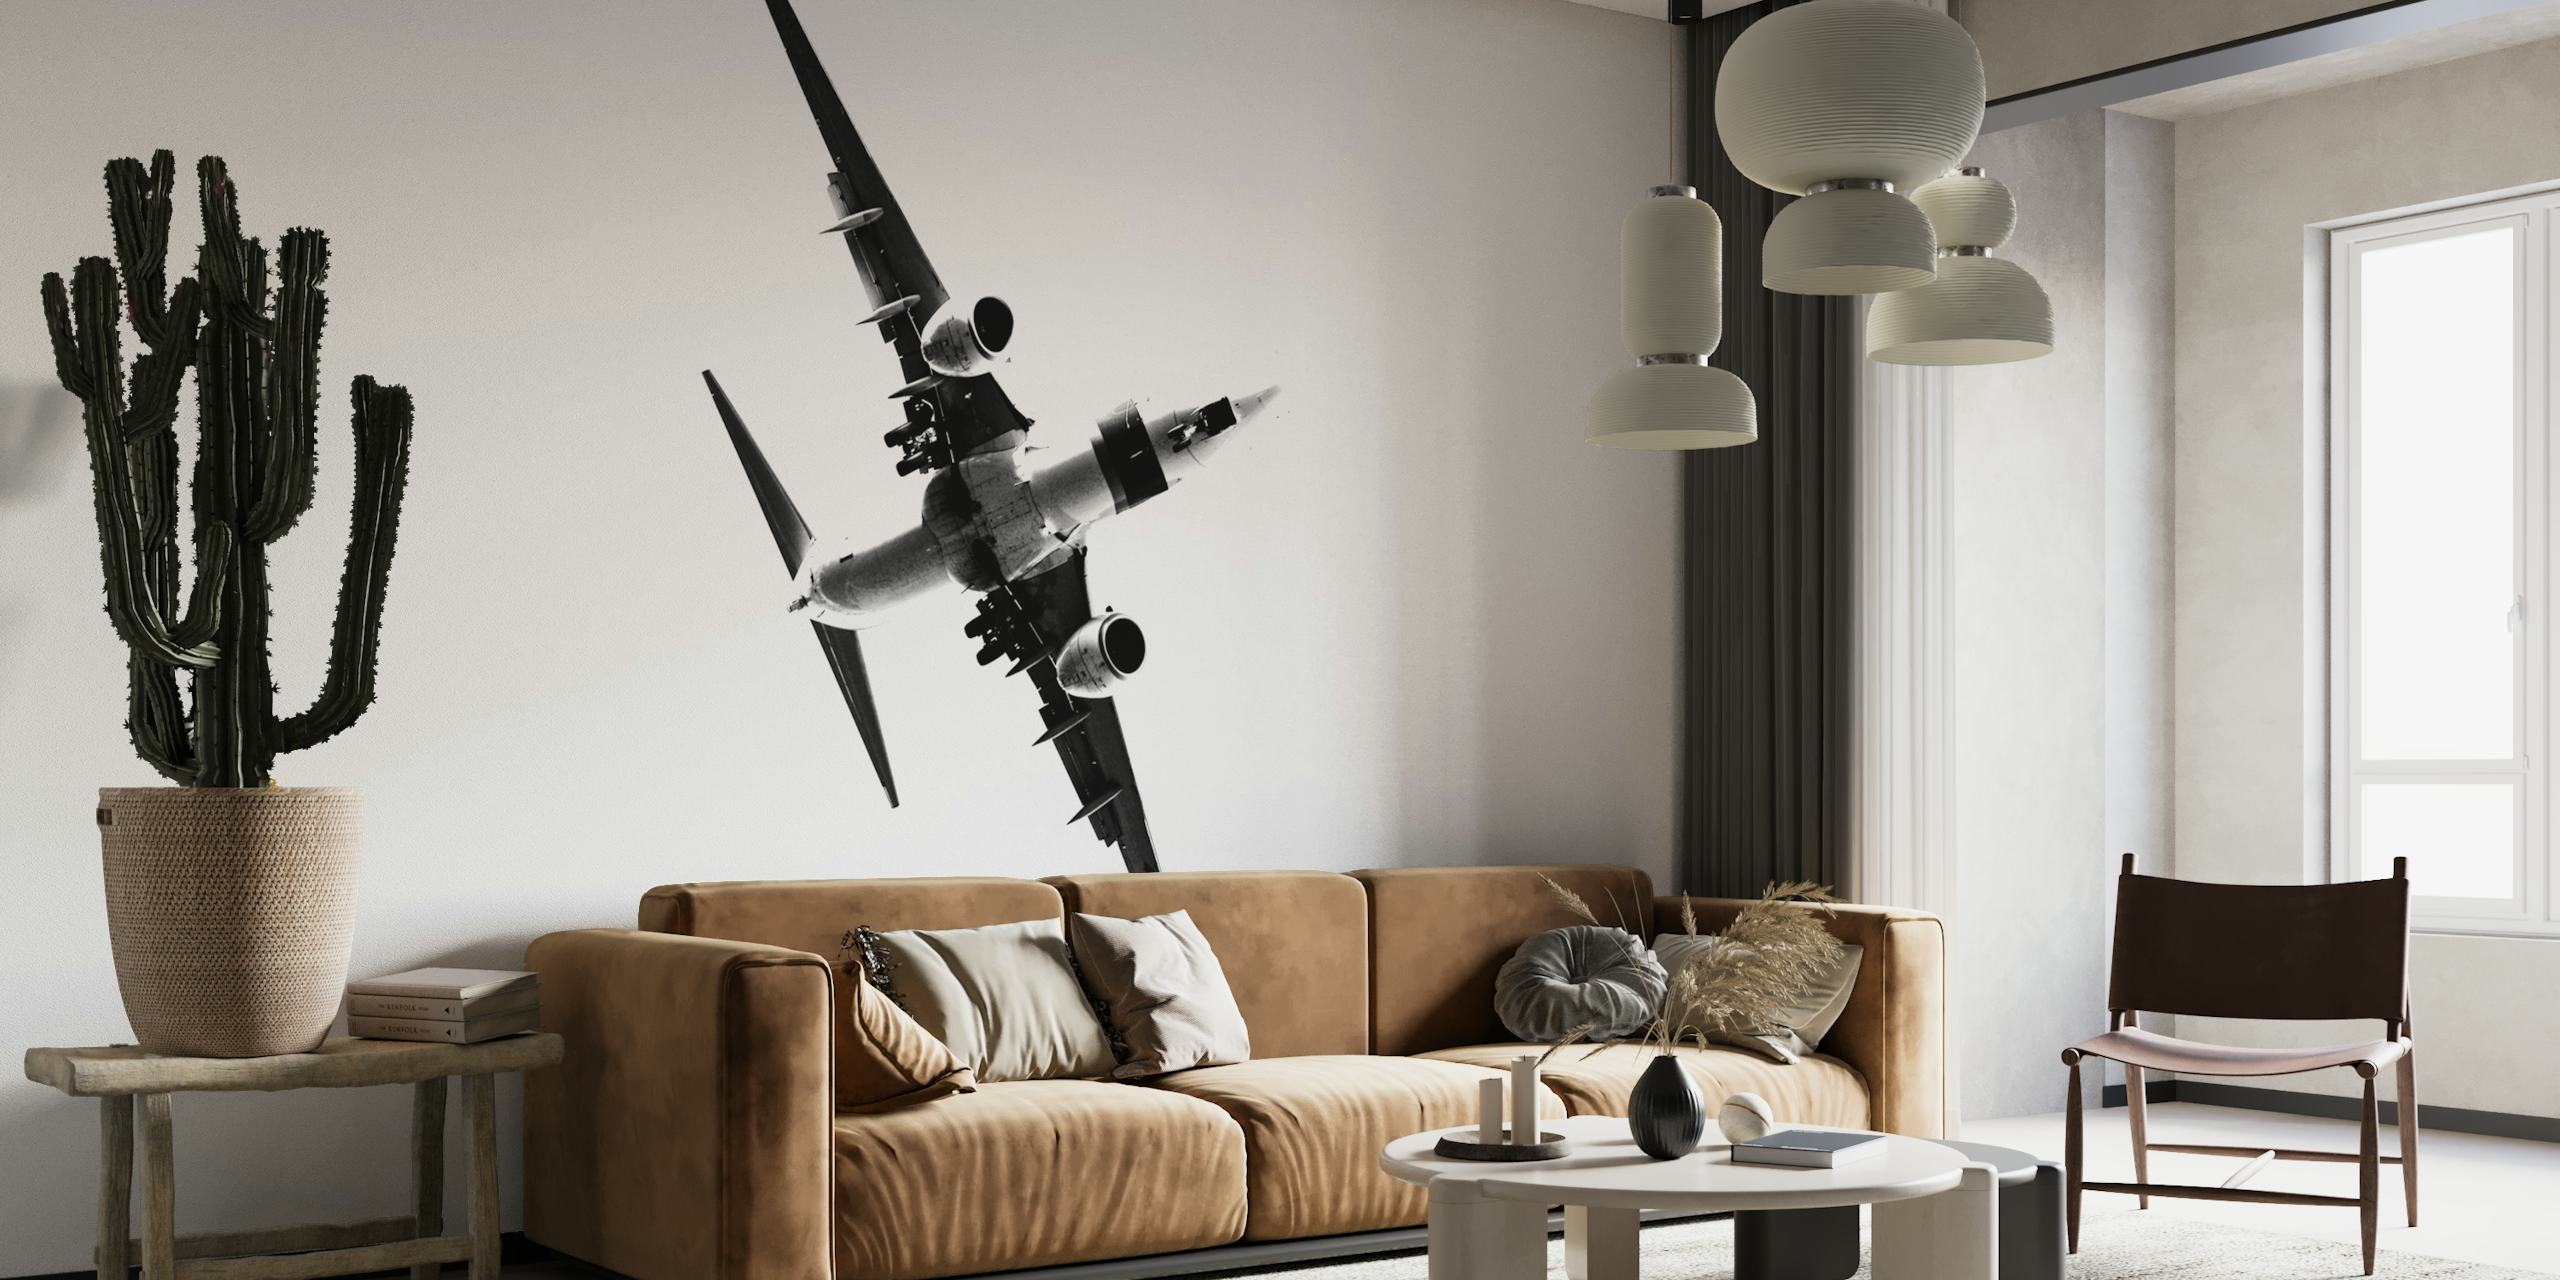 Zwart-wit fotobehang van een gestileerd stijgend vliegtuig dat vooruitgang en ambitie symboliseert